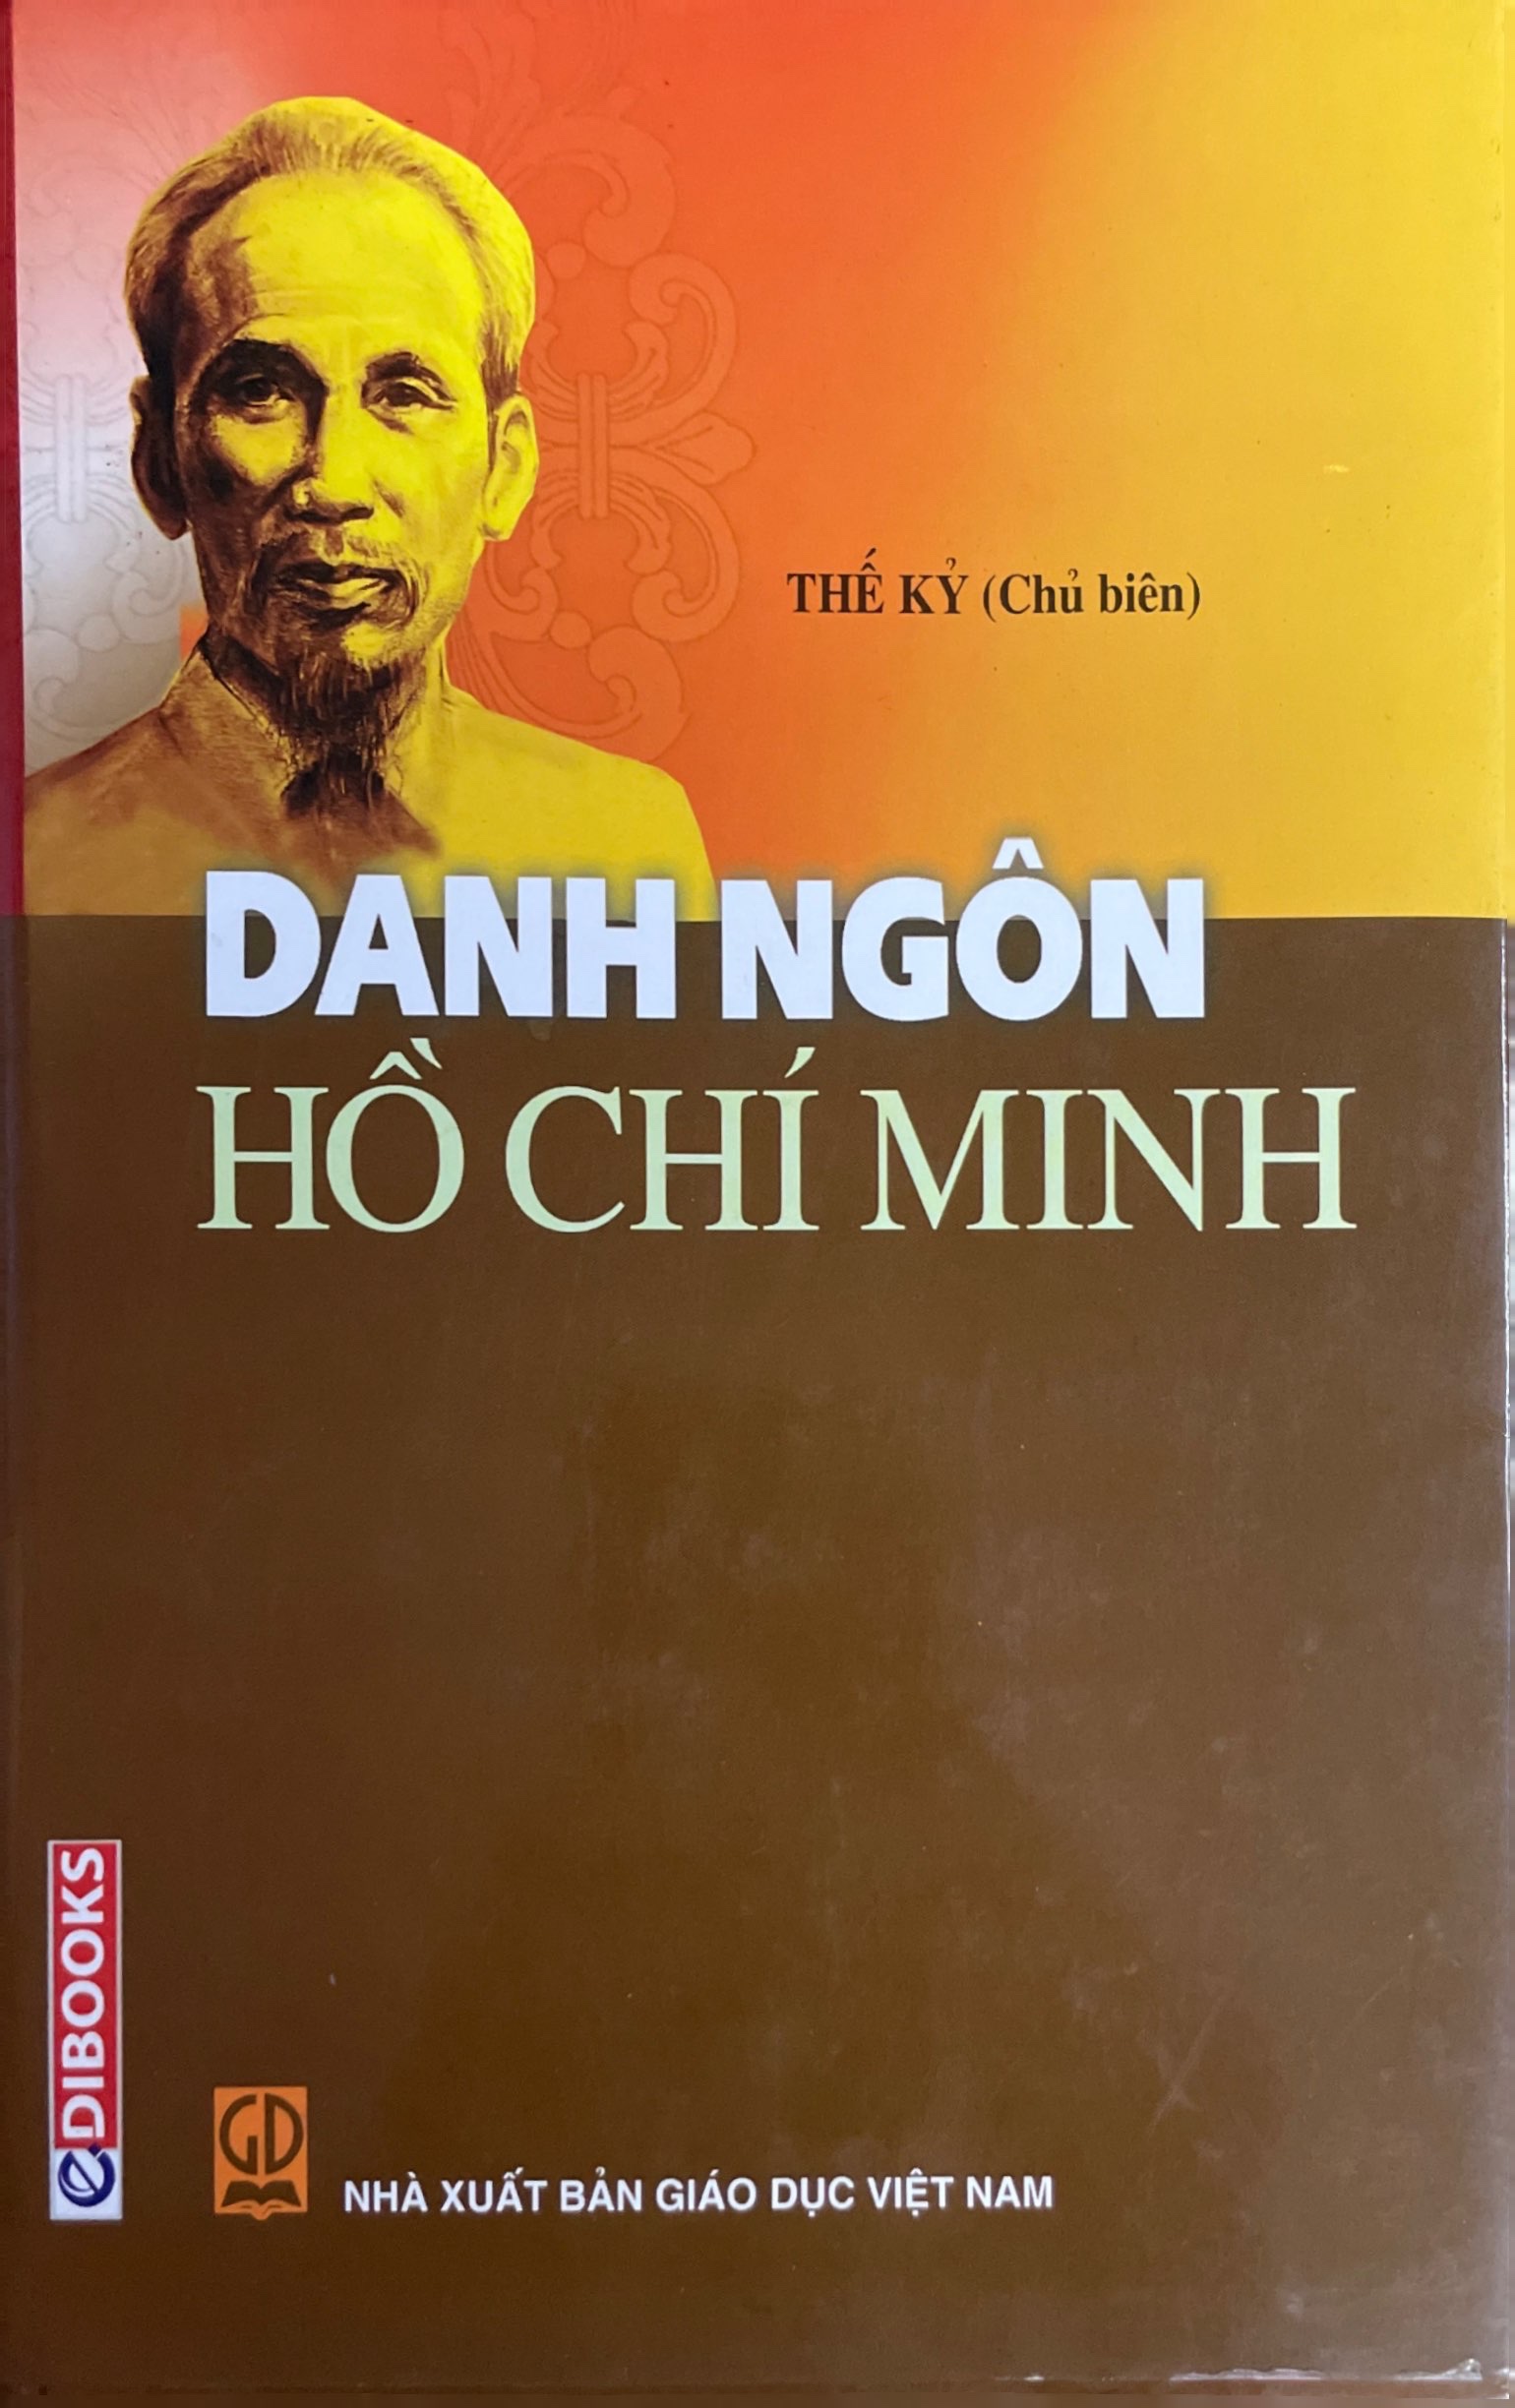 Danh ngôn Hồ Chí Minh